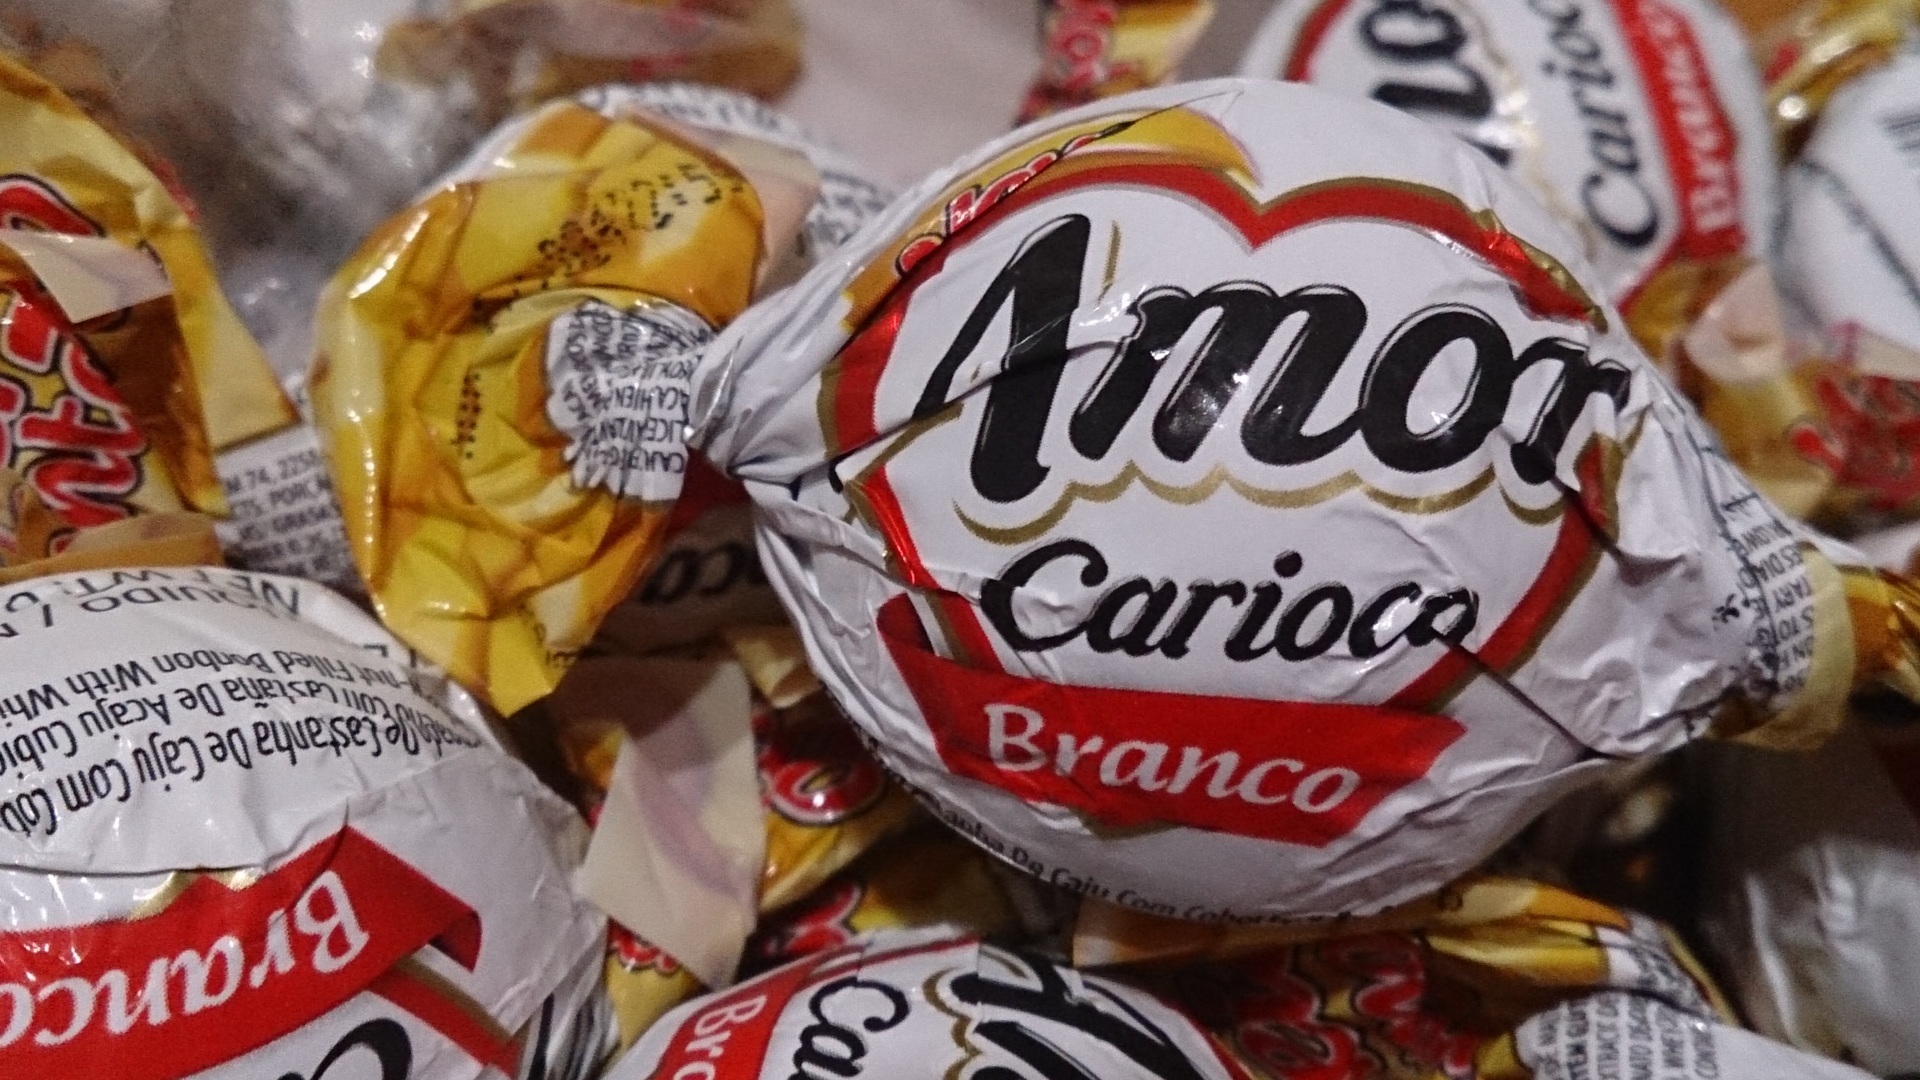 アモール カリオカ ブランコ チョコレート